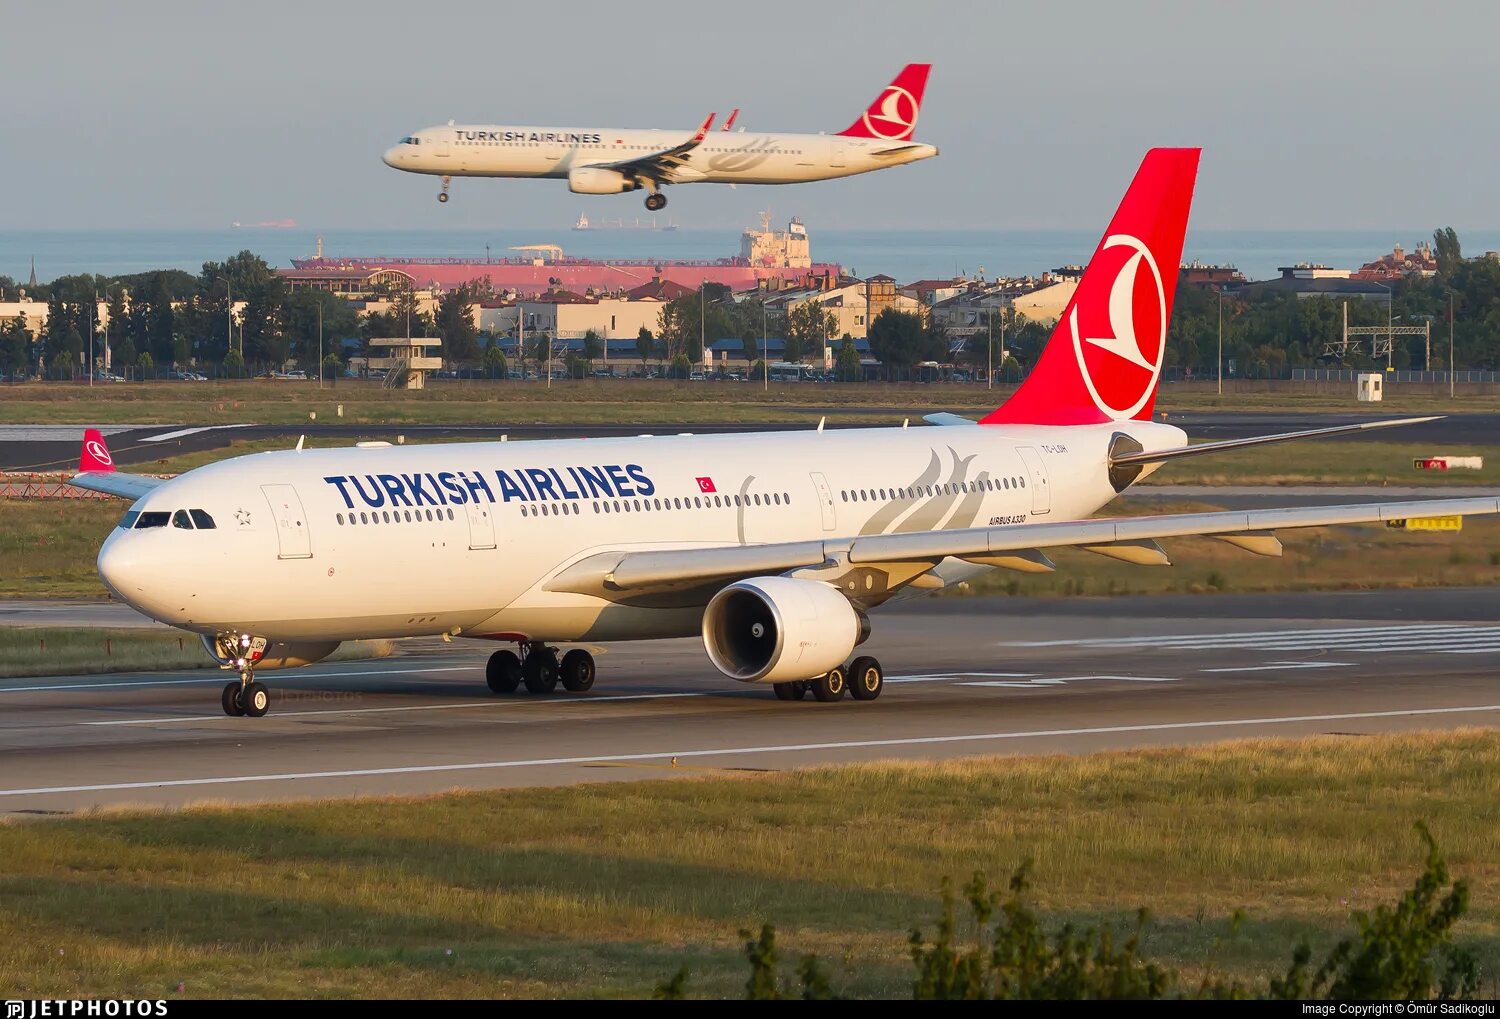 Турецкая авиакомпания сайт. Авиакомпания Туркиш Эйрлайнс. A330 Туркиш Эрлайнс. Airbus a330. Самолет Туркиш Эйрлайнс.